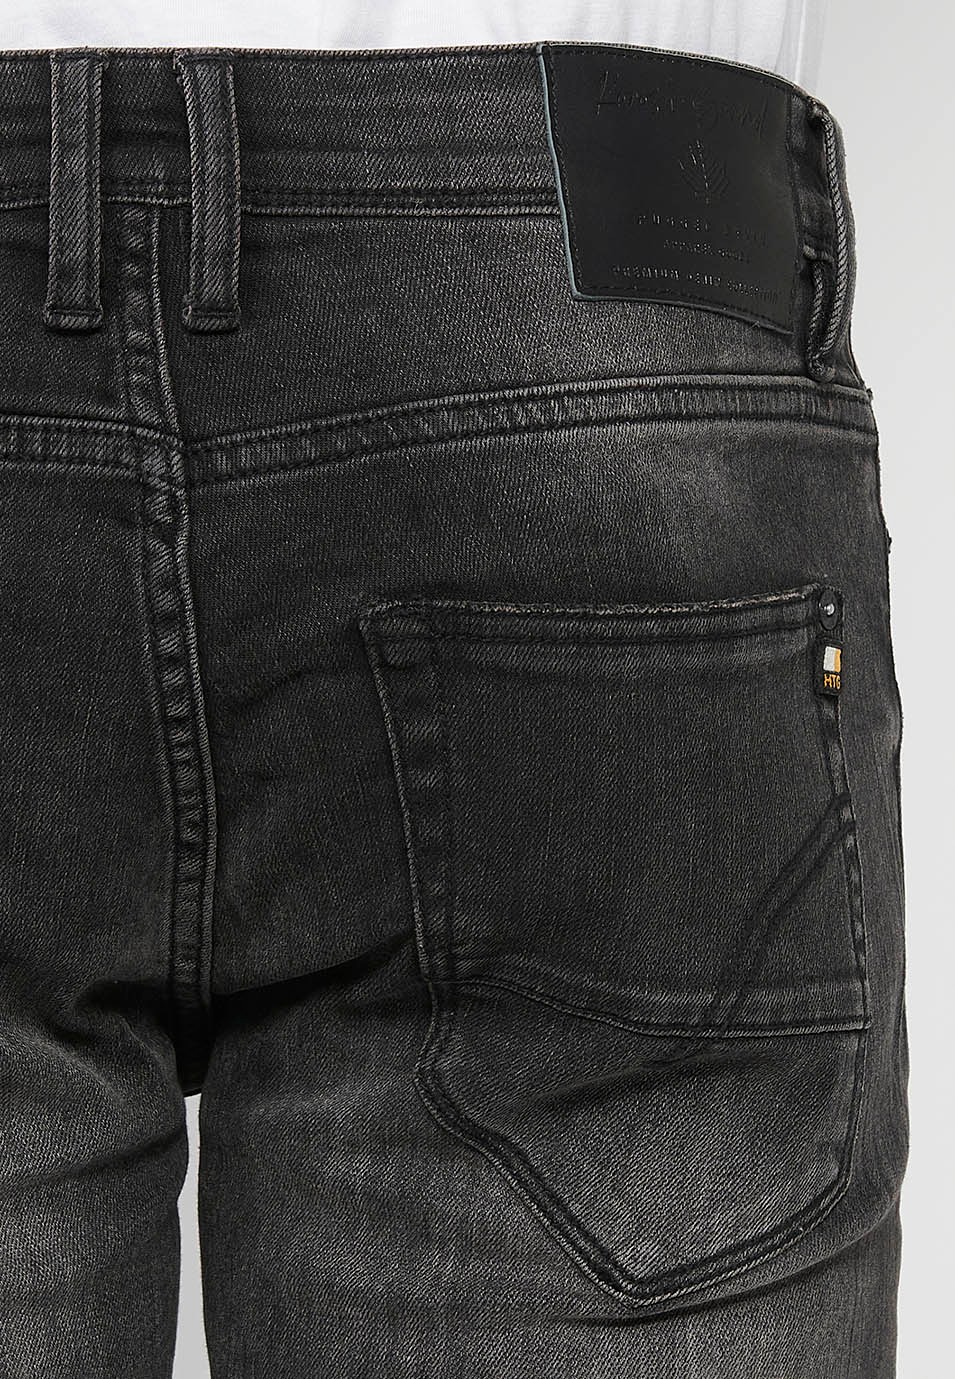 Pantalons texans llarg straigth regular fit amb Tancament davanter amb cremallera i botó de Color Denim Negre per a Home 8